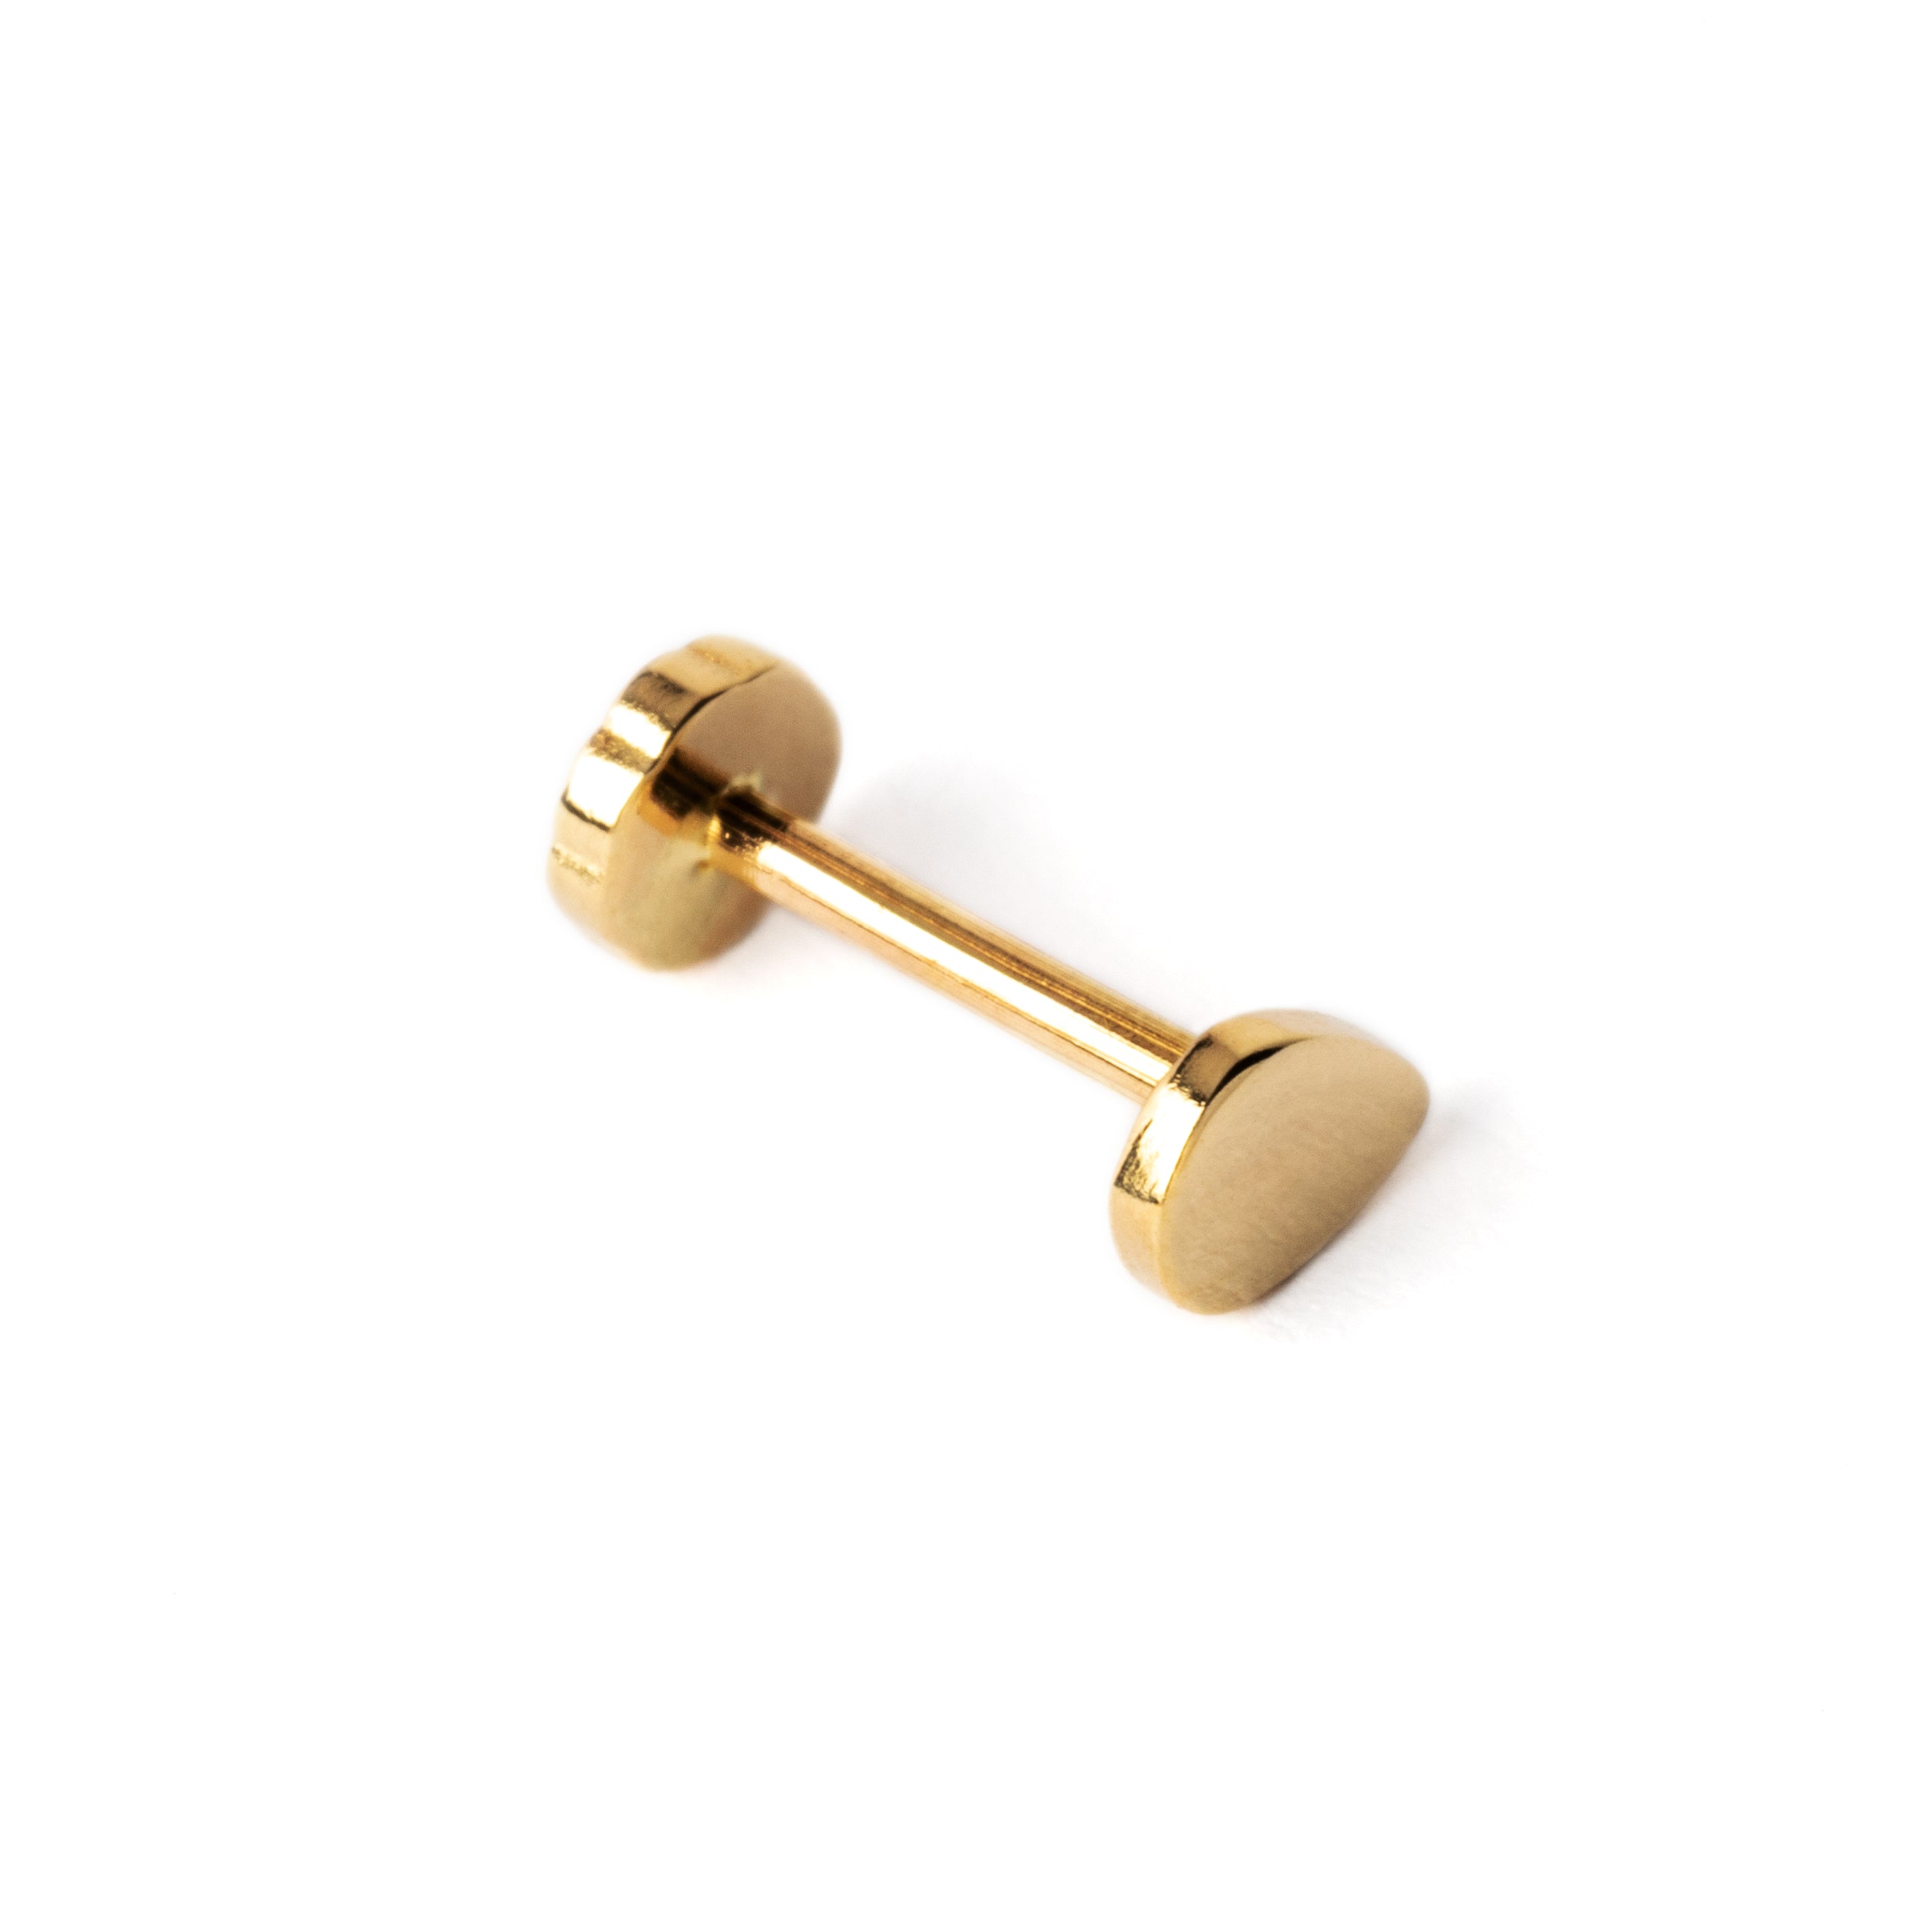 14k Gold internally threaded screw back earring 1.2mm (16g), 8mm, teardrop labret stud left side view